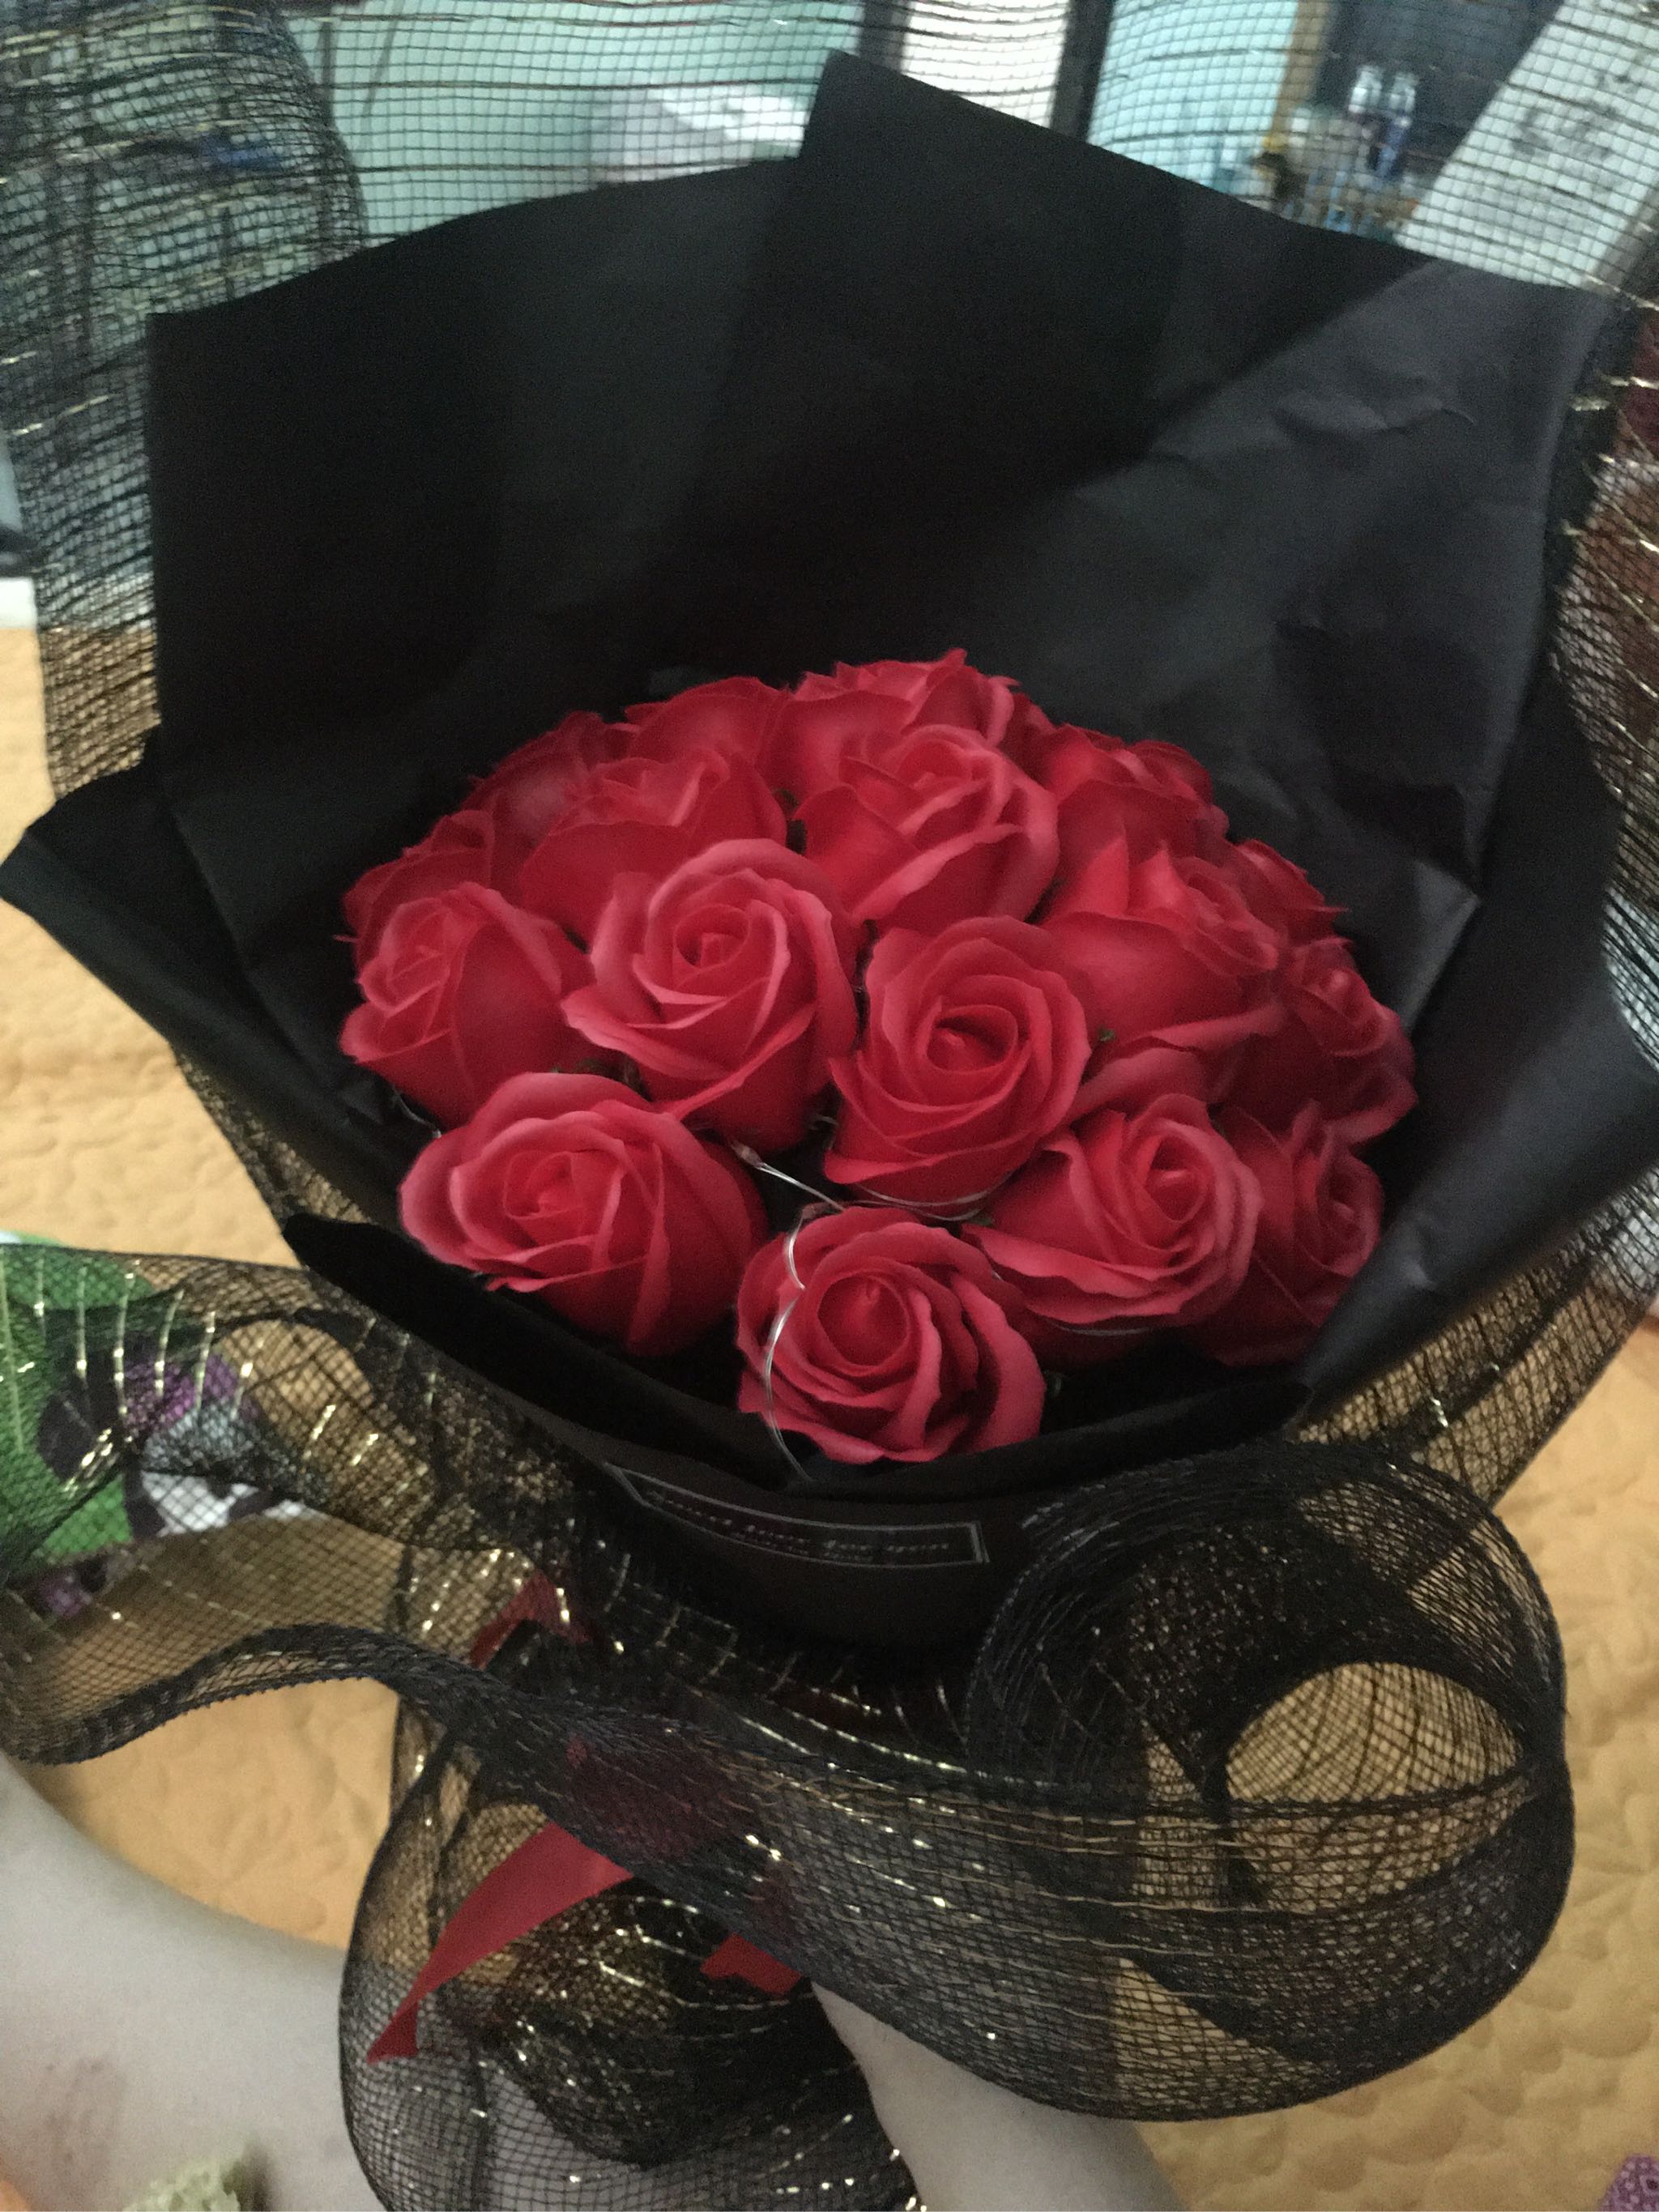 Hoa màu đỏ tươi rất đẹp, shop đóng hộp kỹ càng. Xin cảm ơn shop và tác giả của bó hoa này! 😍😍 Chúc ce phụ nữ có 1 ngày 8/3 vv hp! Chúc shop buôn may bán đắt.